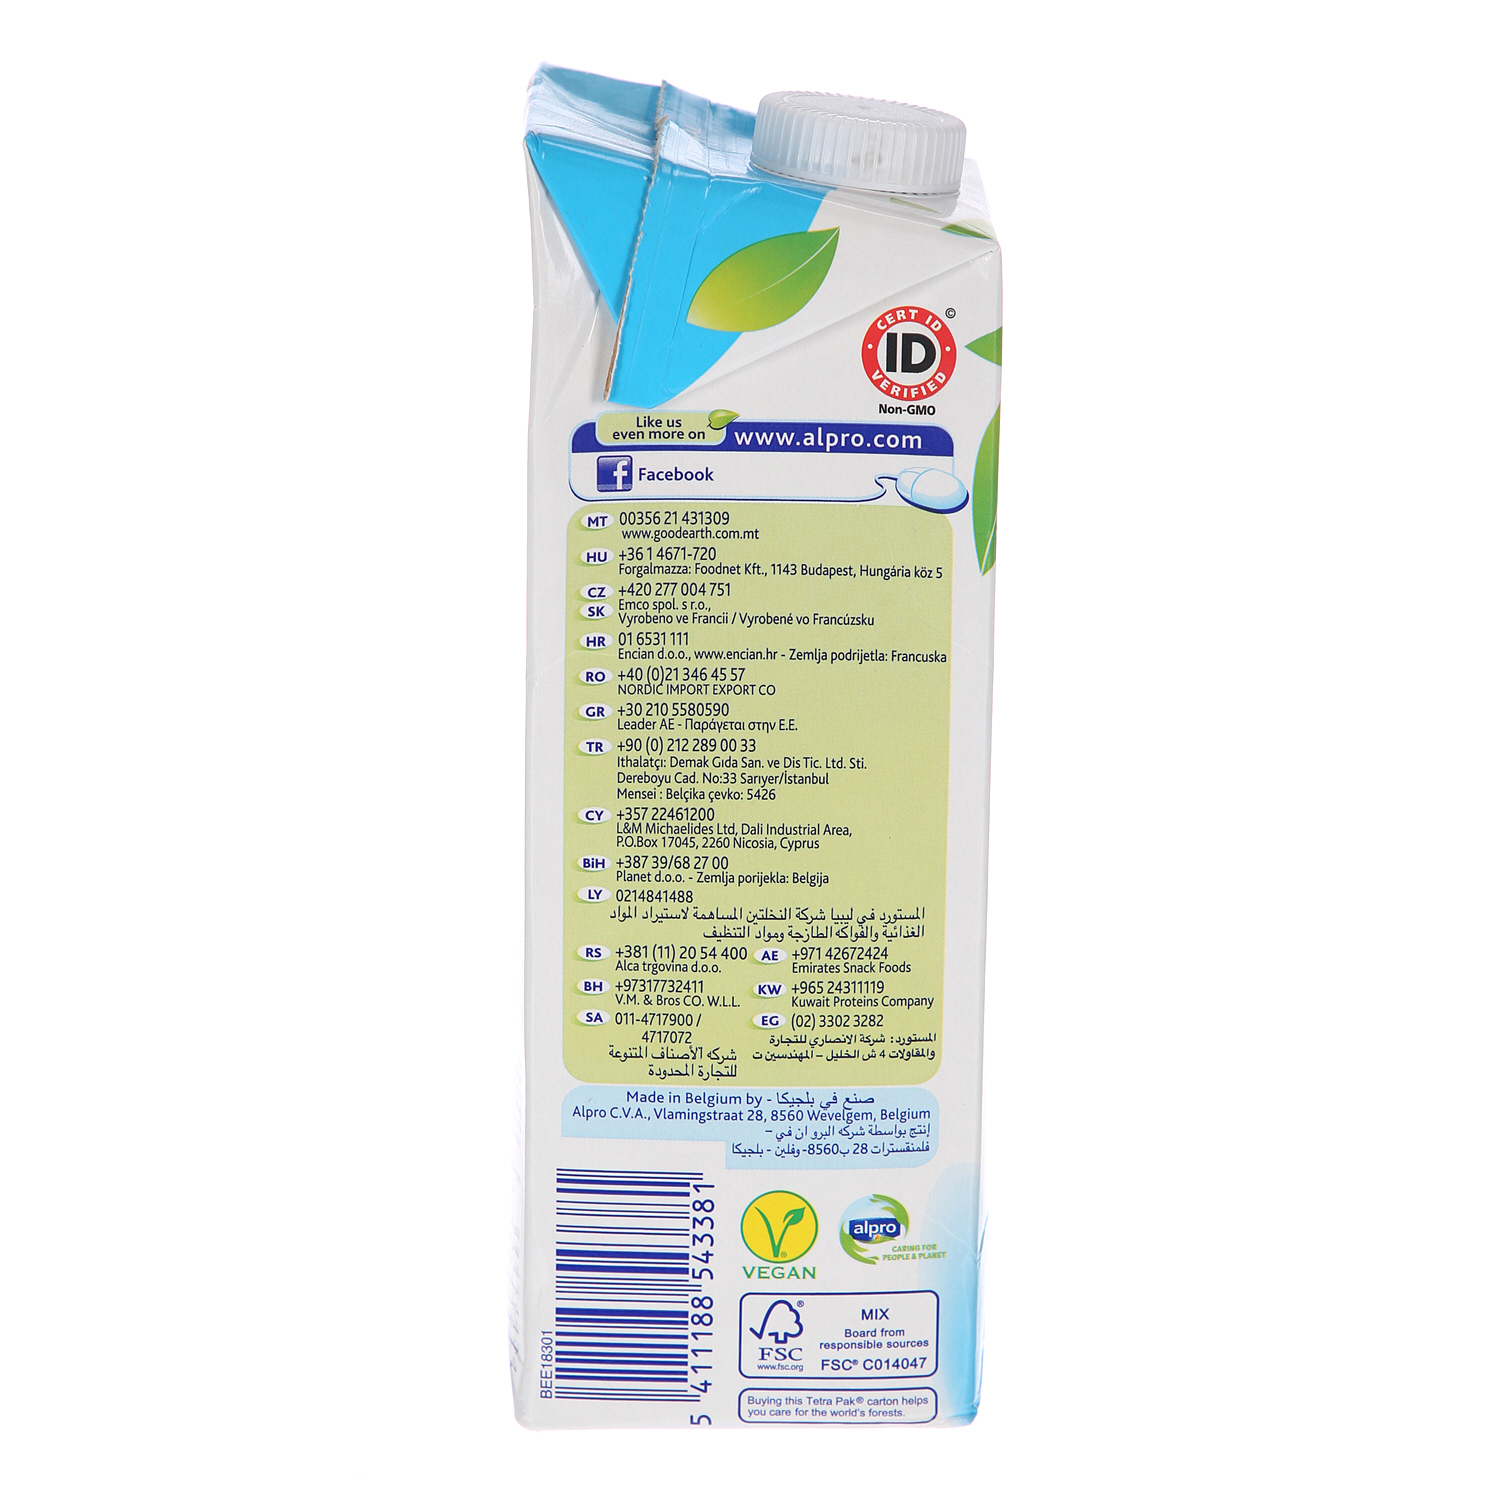 Alpro Original Soya Milk 1 L